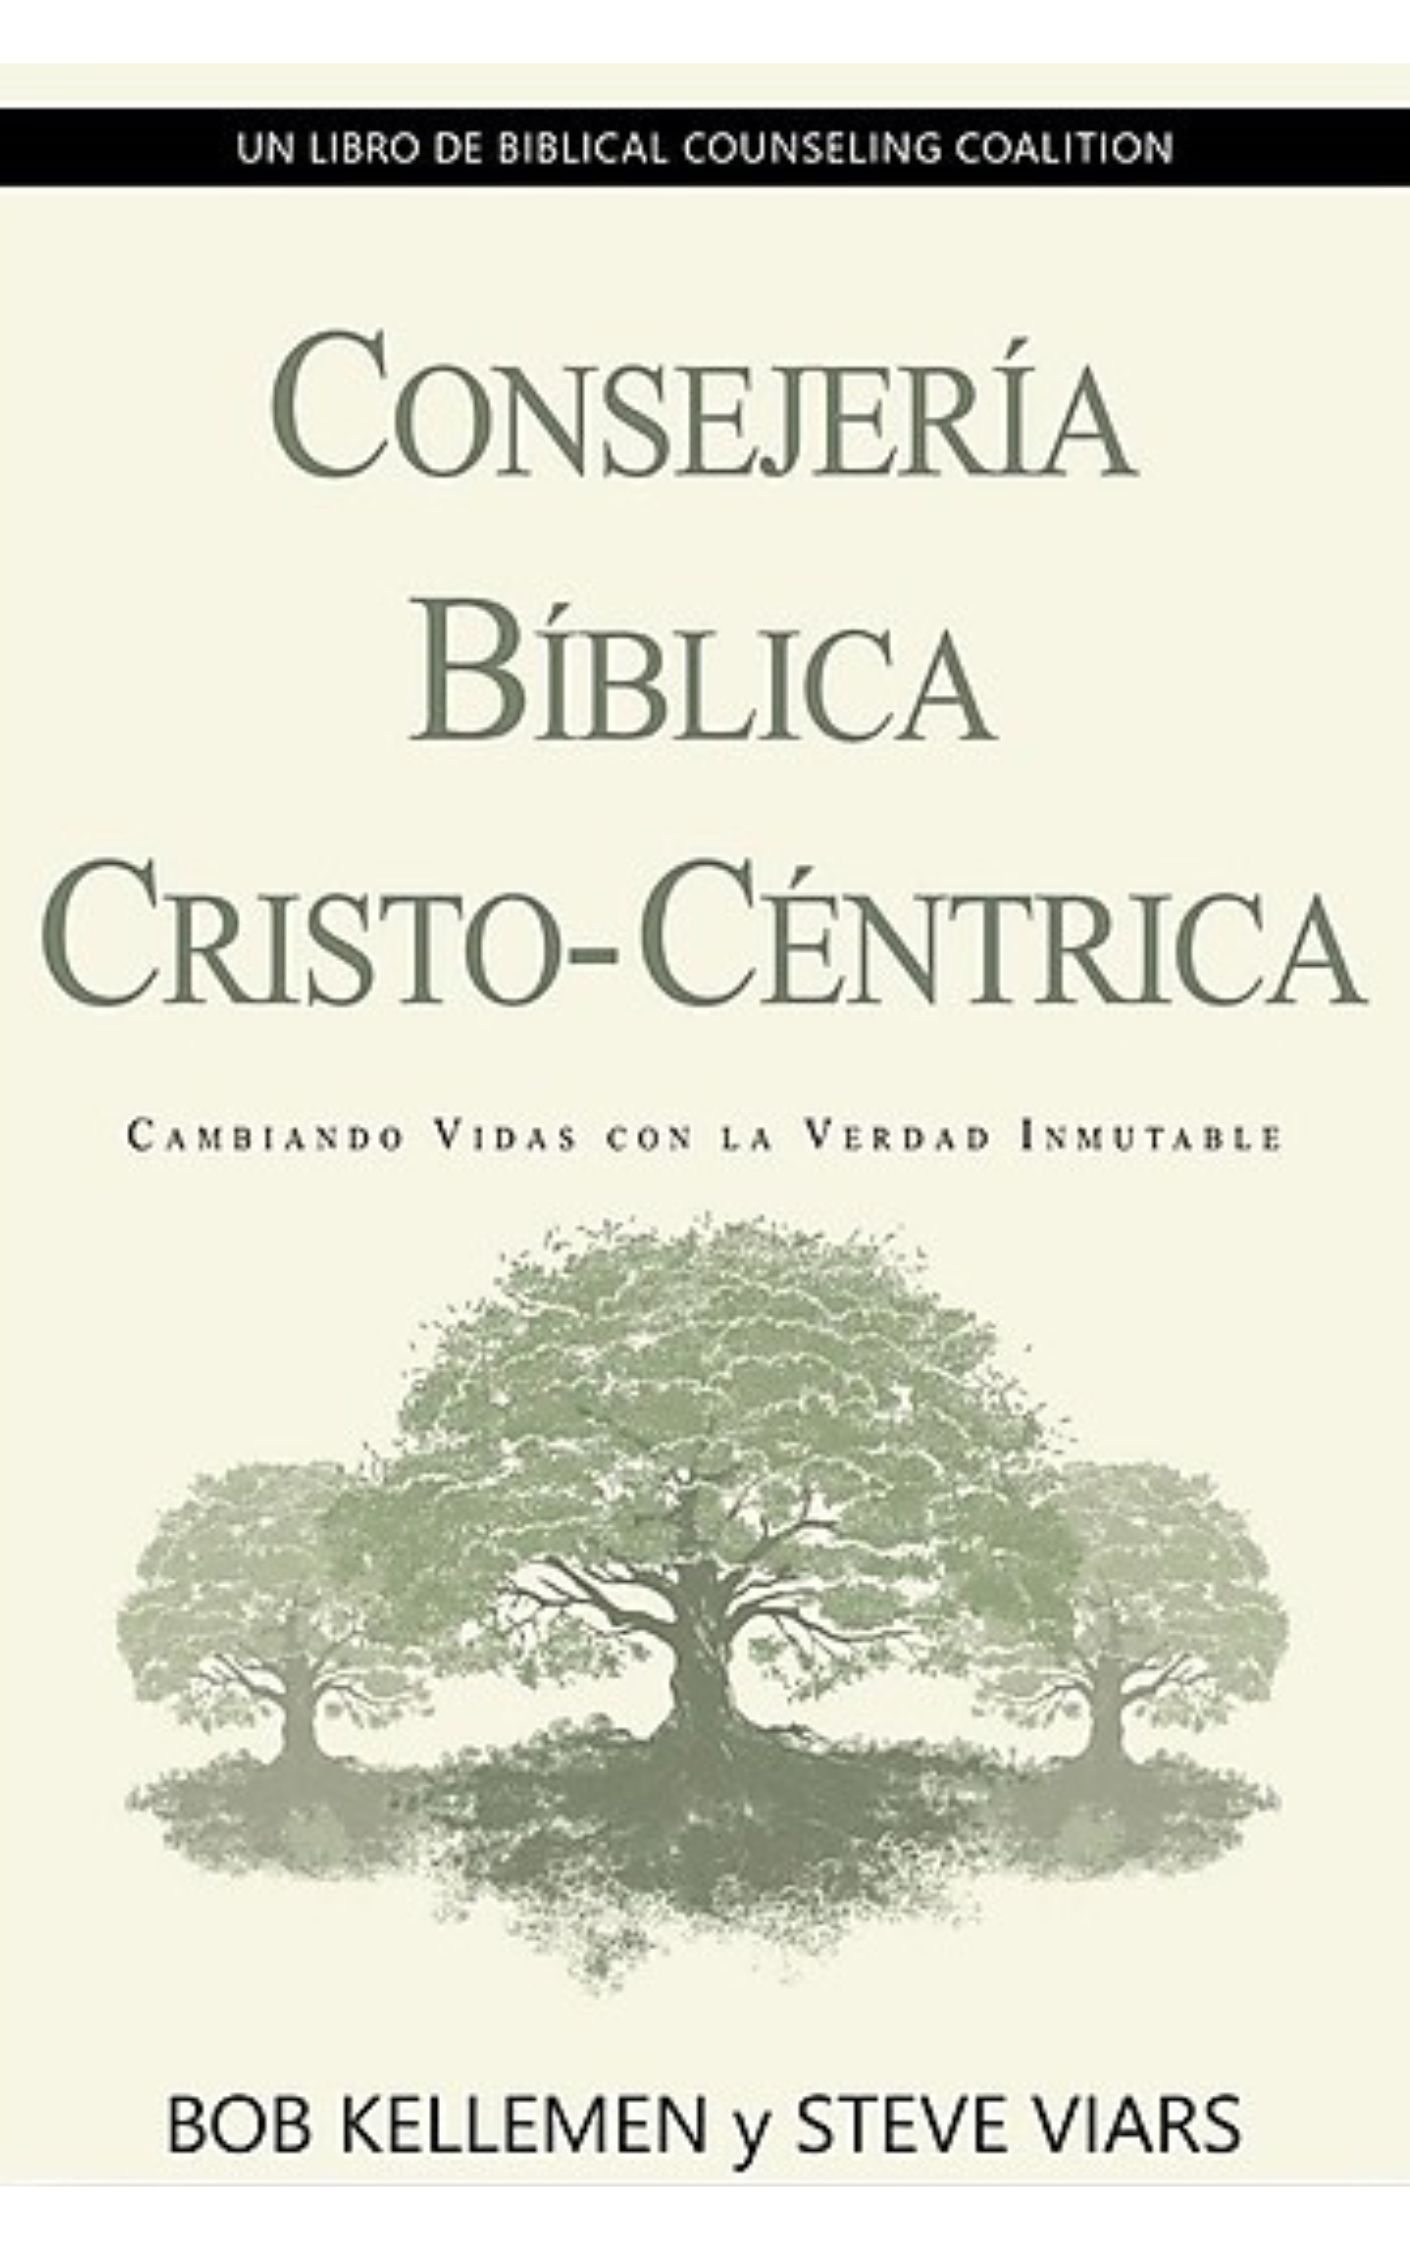 Consejería Bíblica Cristo-Centrica